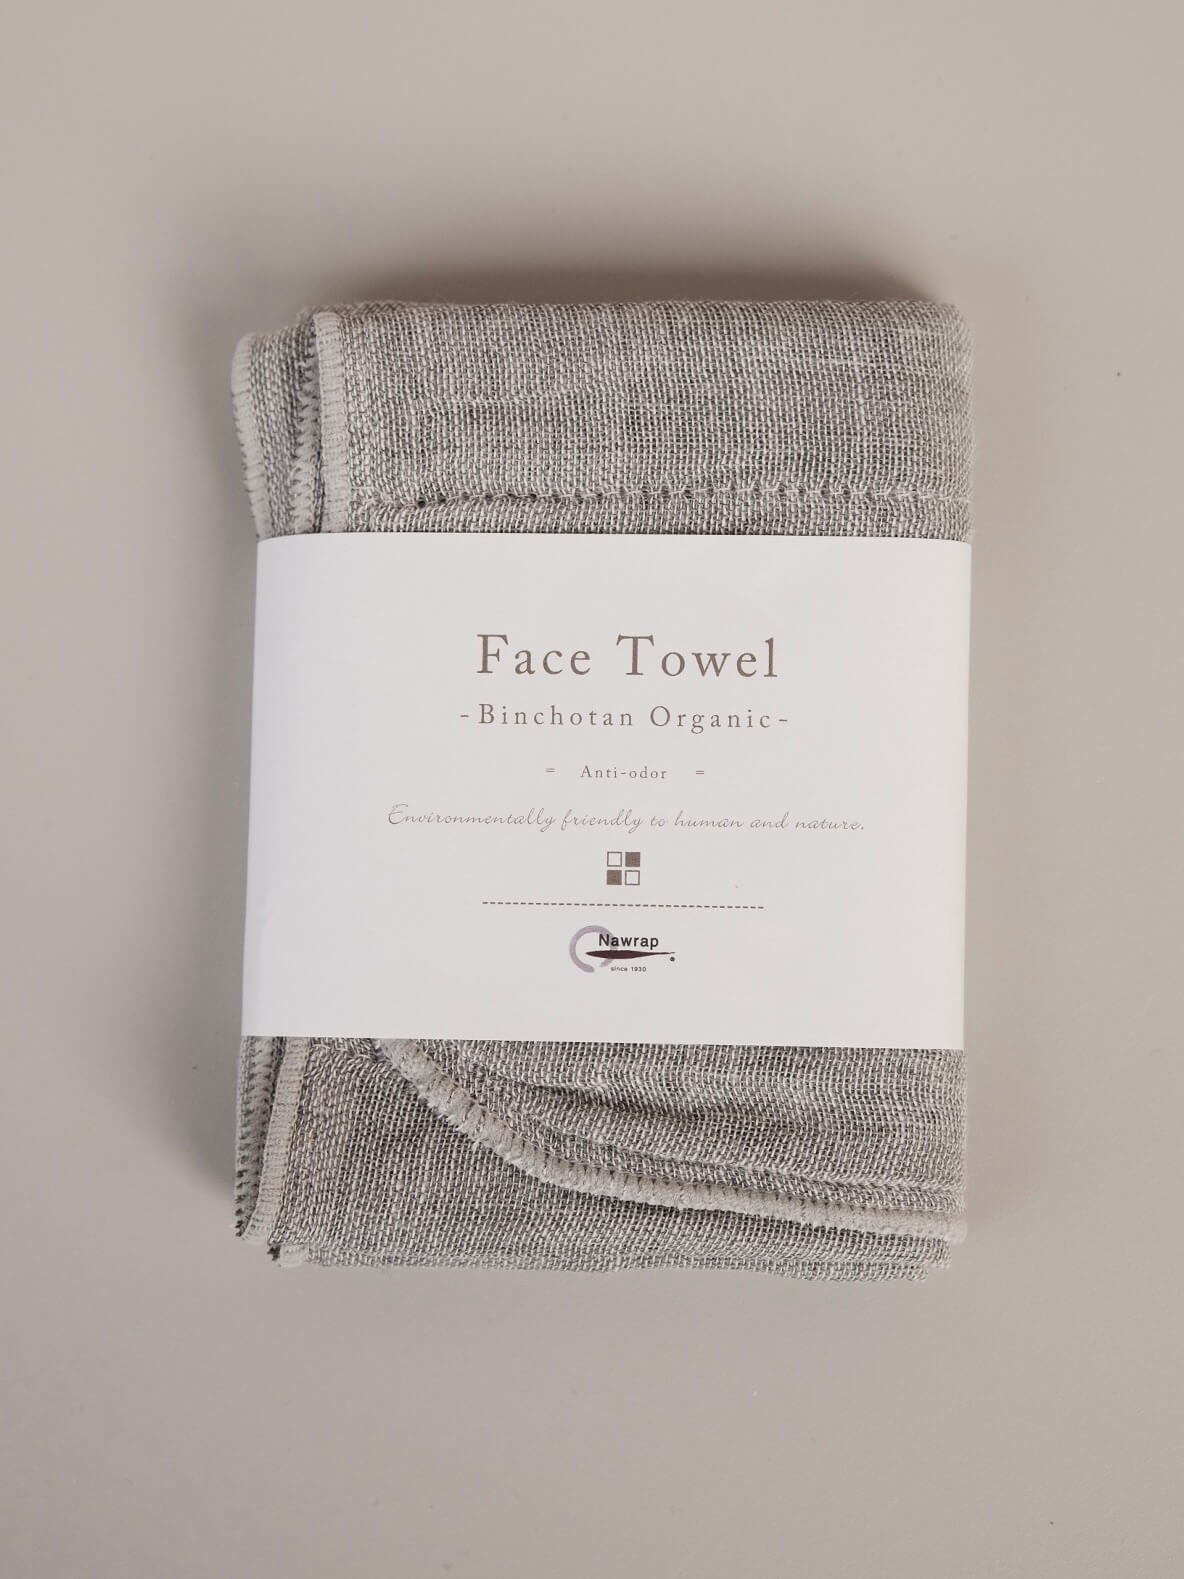 Binchotan Face Towel by Nawrap